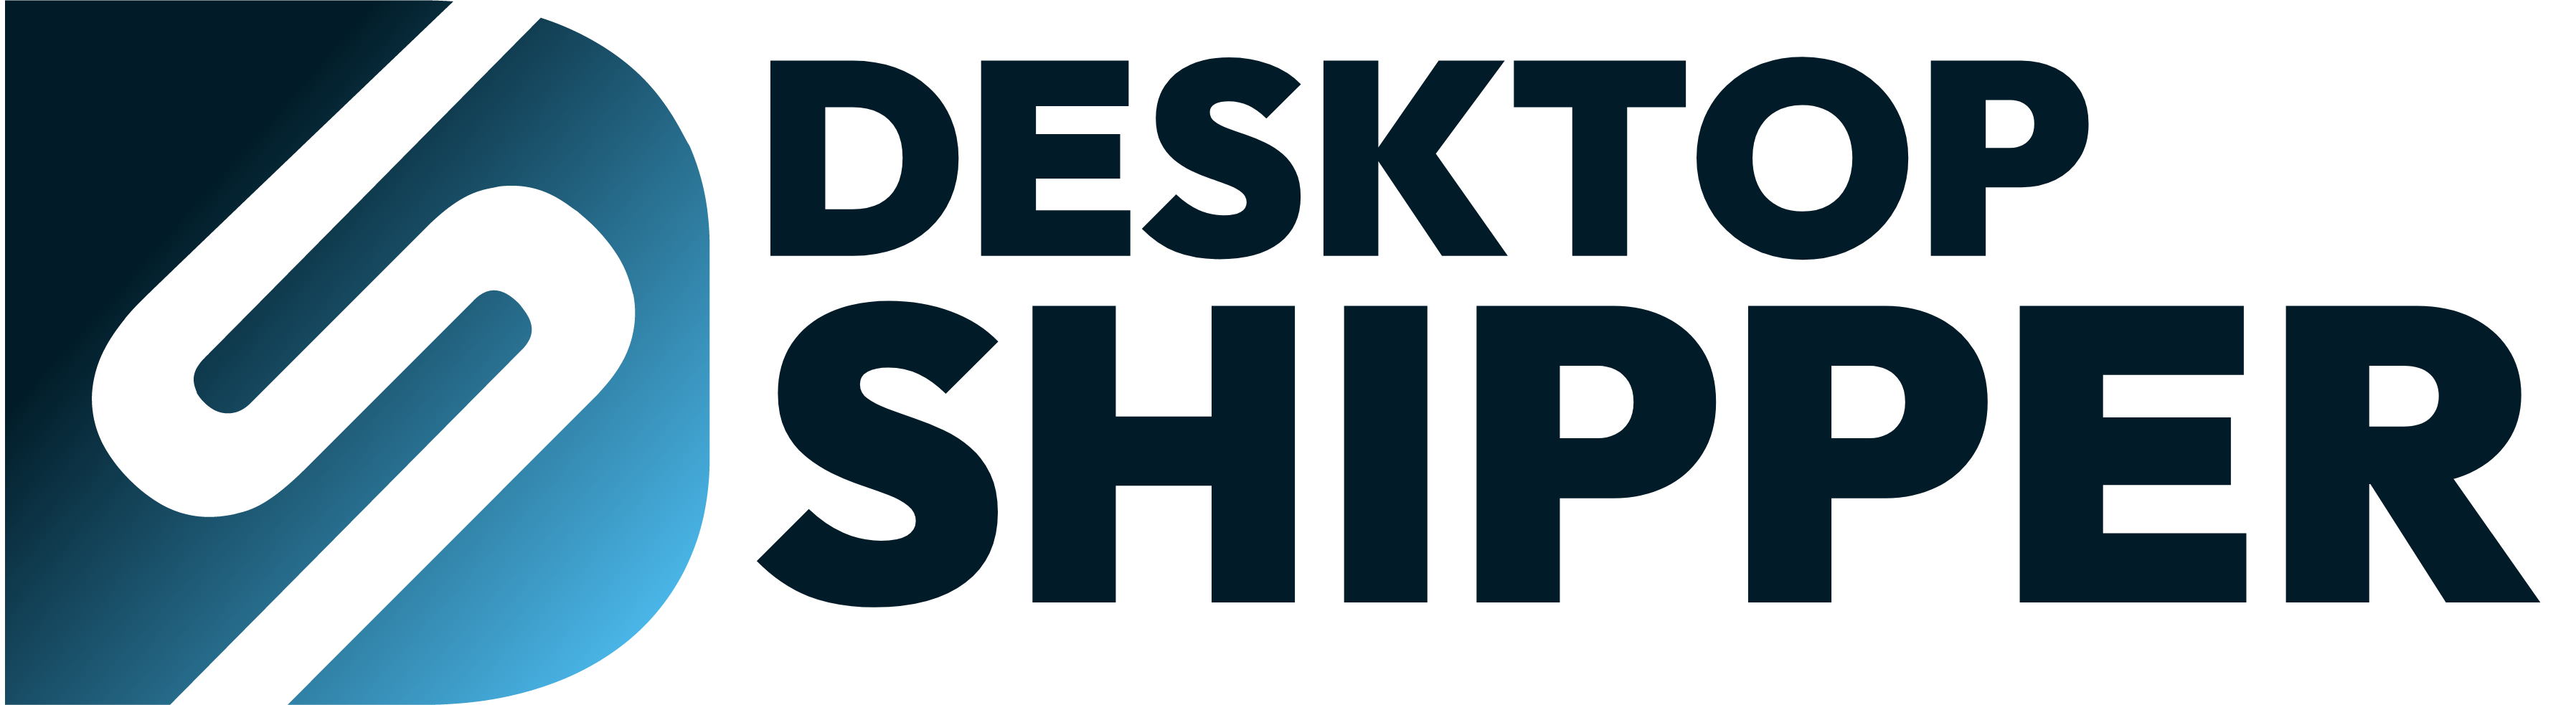 DesktopShipper Transparent Background Logo 2-1